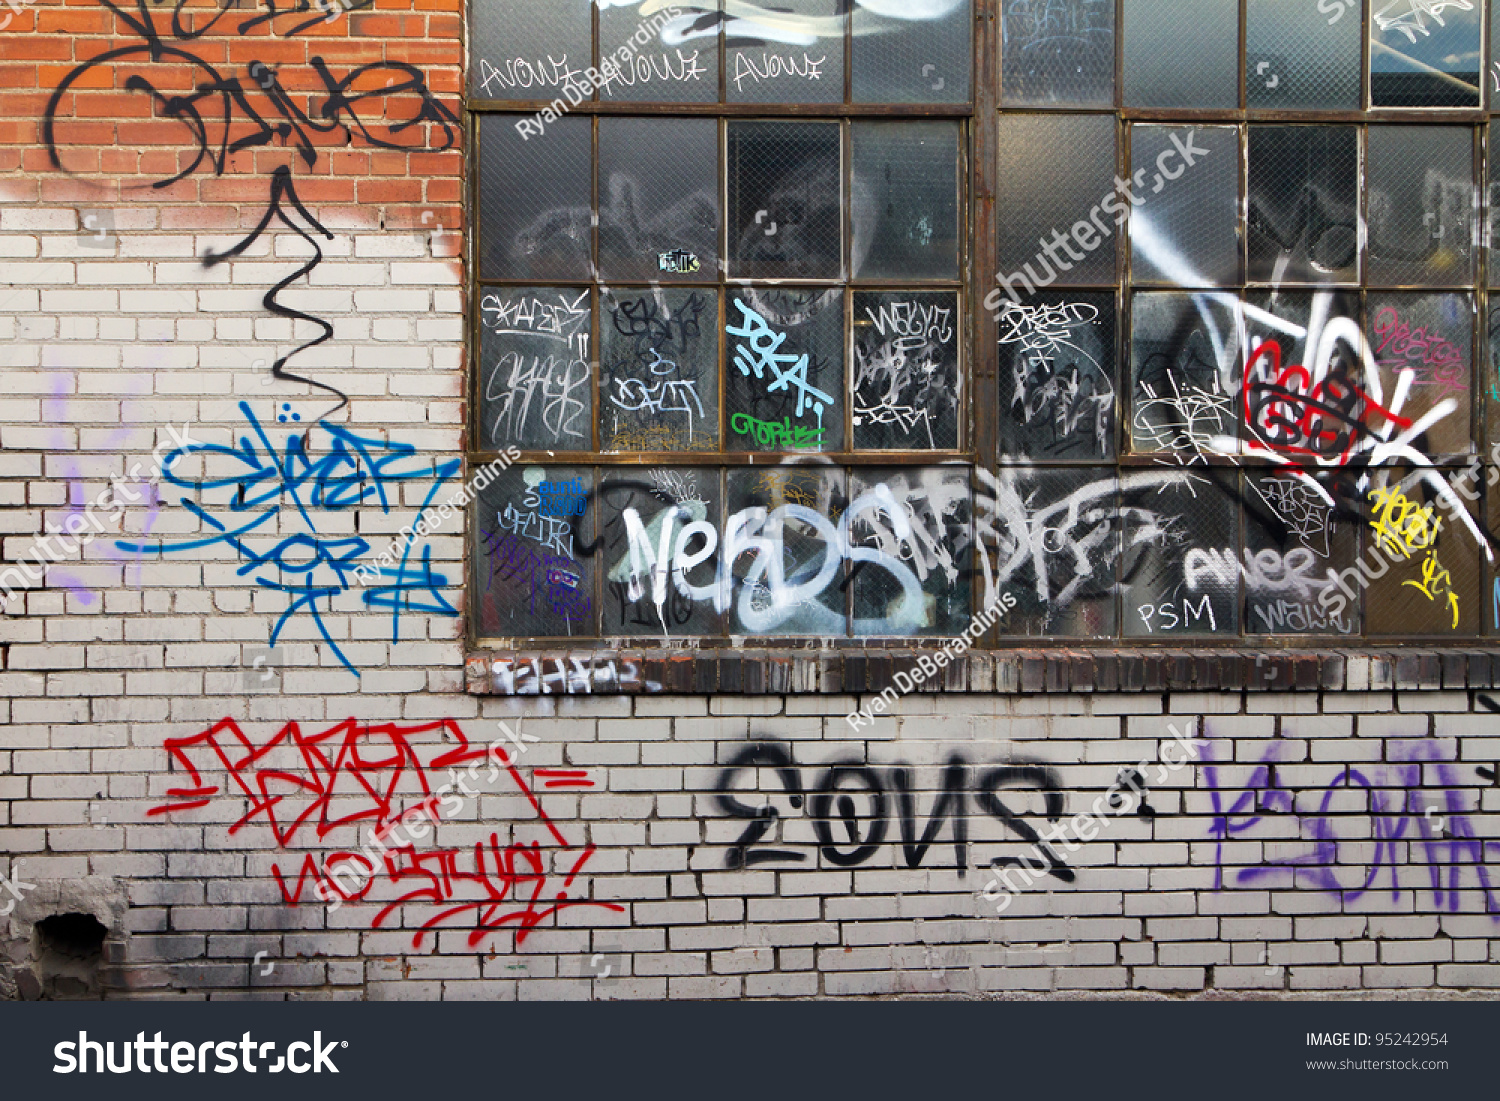 Grungy alleyway in Denver Colorado with graffiti. #95242954